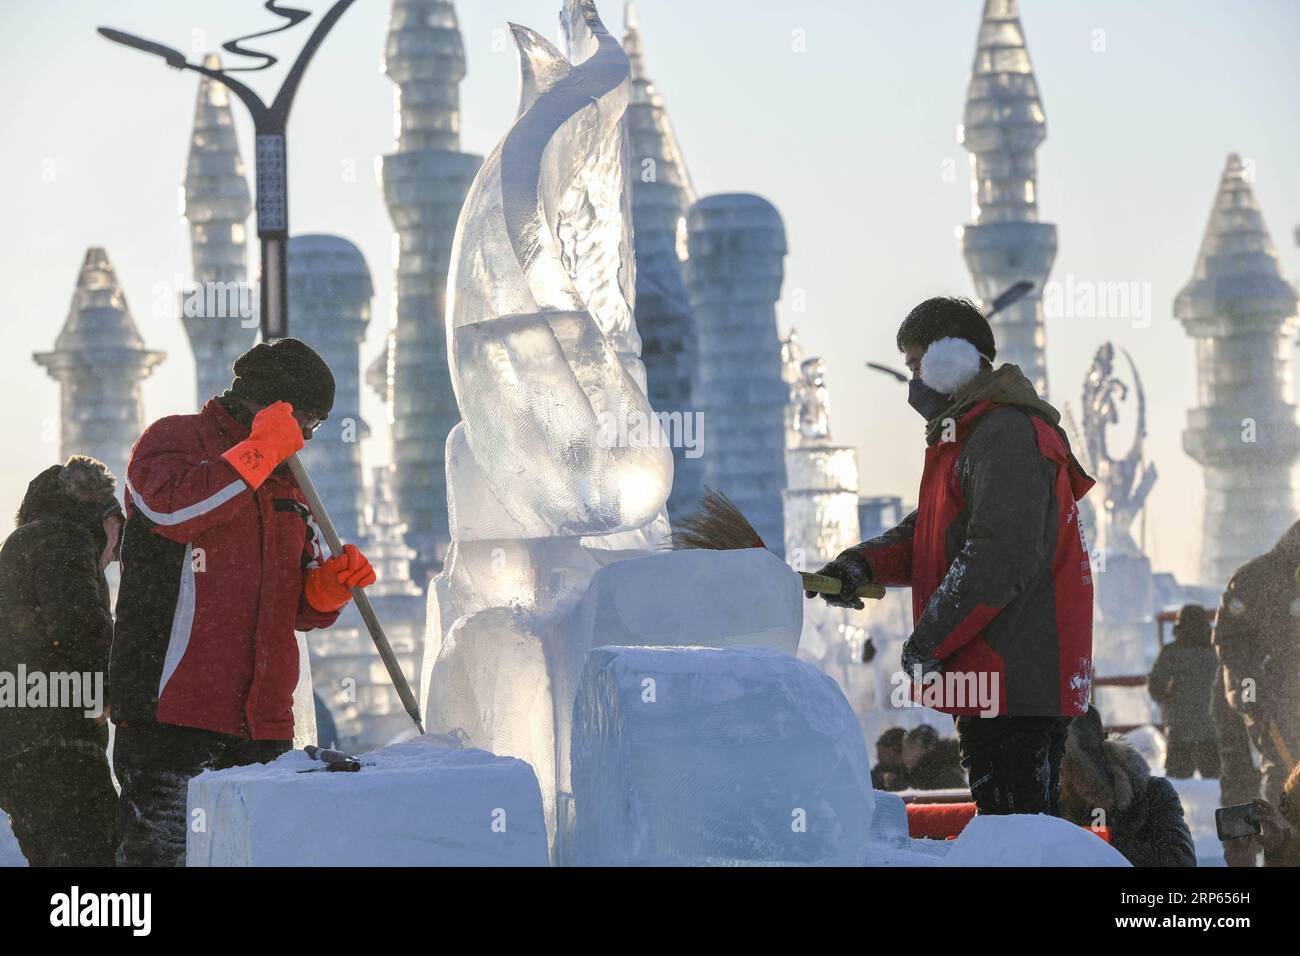 (190102) -- HARBIN, 2 gennaio 2019 (Xinhua) -- i concorrenti scolpiscono una scultura di ghiaccio durante un concorso internazionale di scultura di ghiaccio a Harbin, capitale della provincia di Heilongjiang della Cina nord-orientale, 2 gennaio 2019. Alla competizione hanno partecipato in totale 16 squadre provenienti da 12 paesi e regioni. (Xinhua/Wang Song) CHINA-HARBIN-ICE SCULPTURE-COMPETITION (CN) PUBLICATIONxNOTxINxCHN Foto Stock